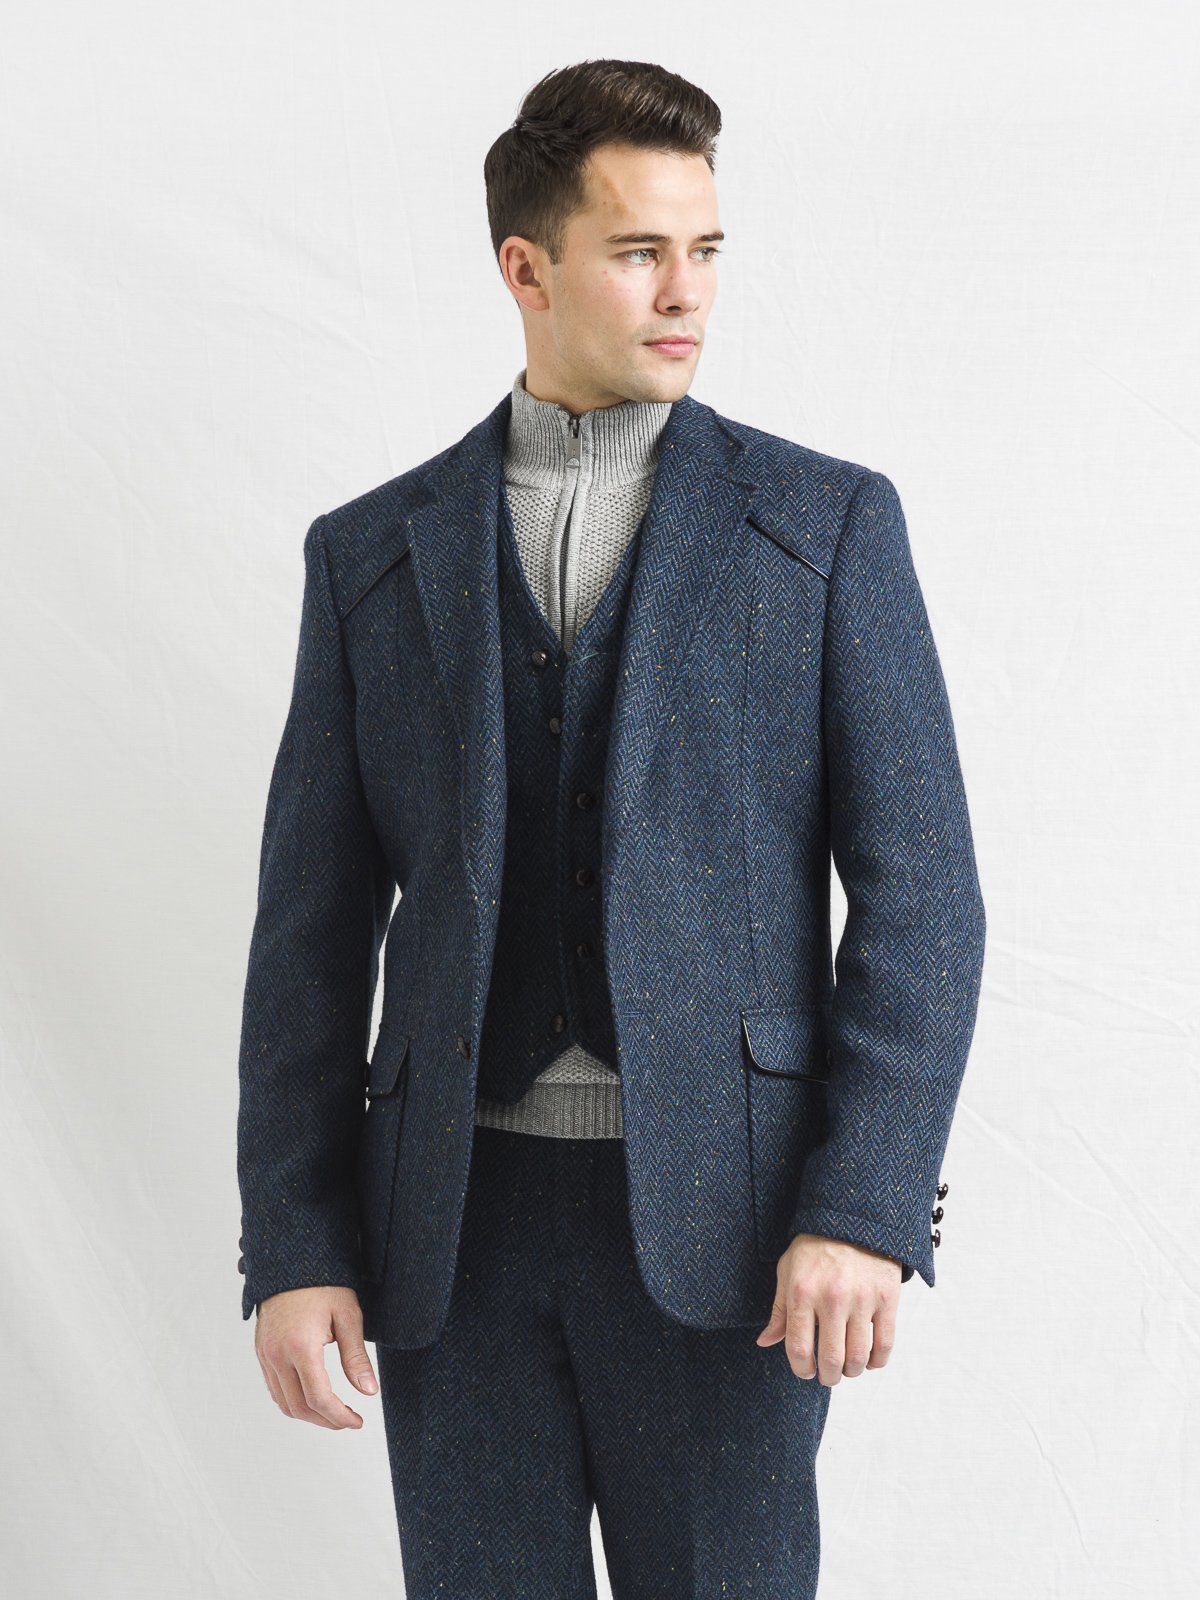 W.B Yeats Blue Tweed Slim Fit Jacket